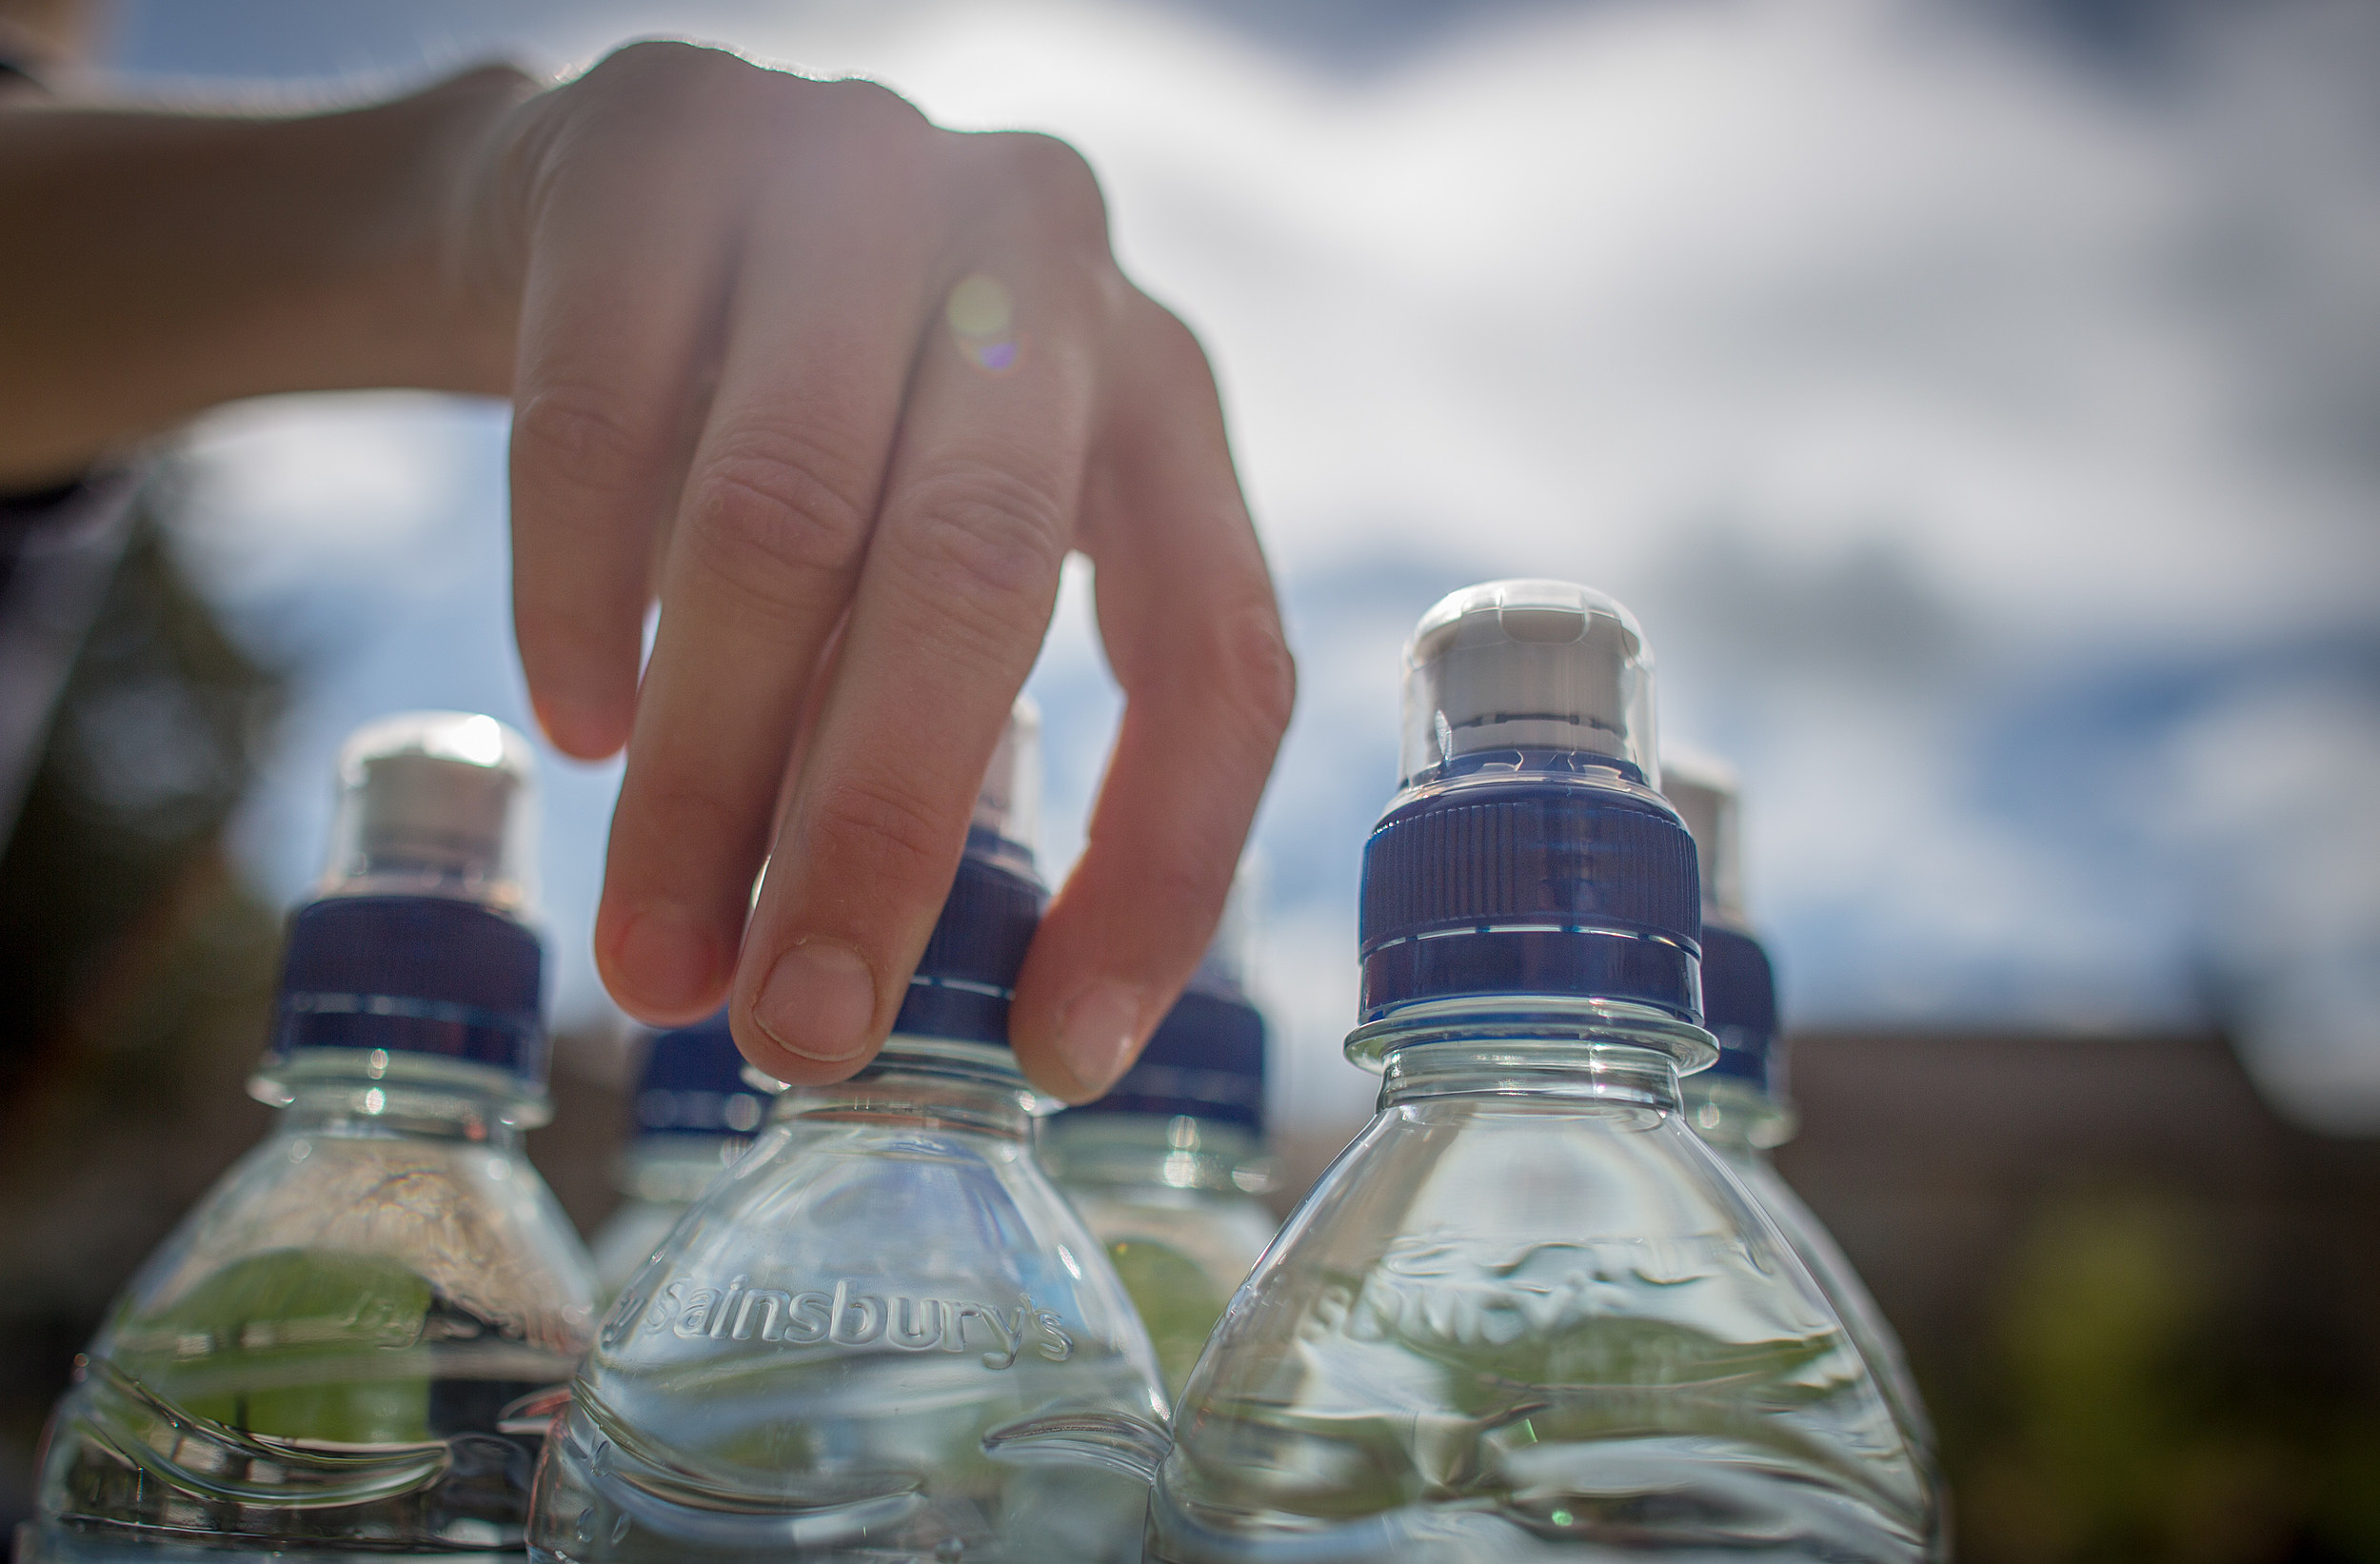 Бесплатная питьевая вода. Пластиковая бутылка для воды. Питьевая вода в бутылках. Бутилированная вода в пластиковых бутылках. Питьевые бутылочки для воды.